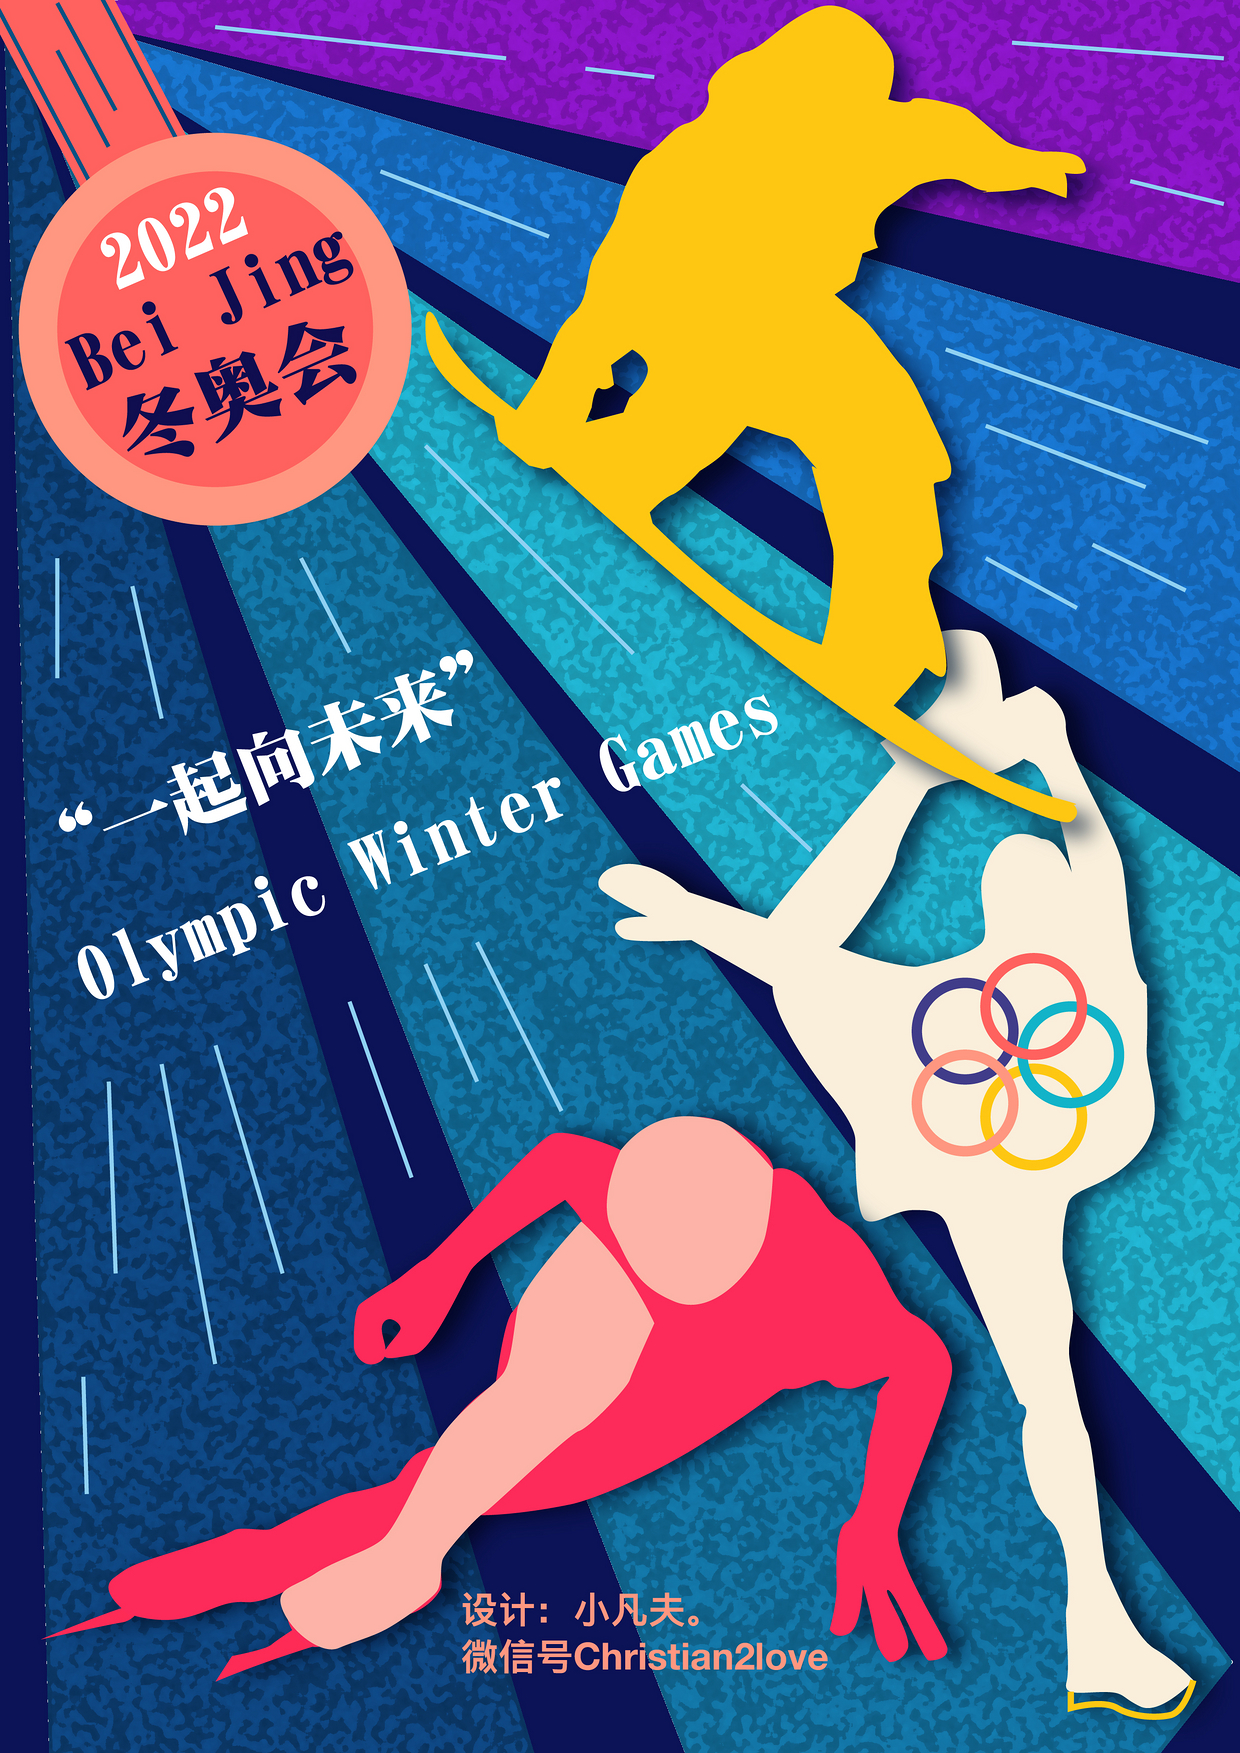 2022冬奥会海报宣传语图片